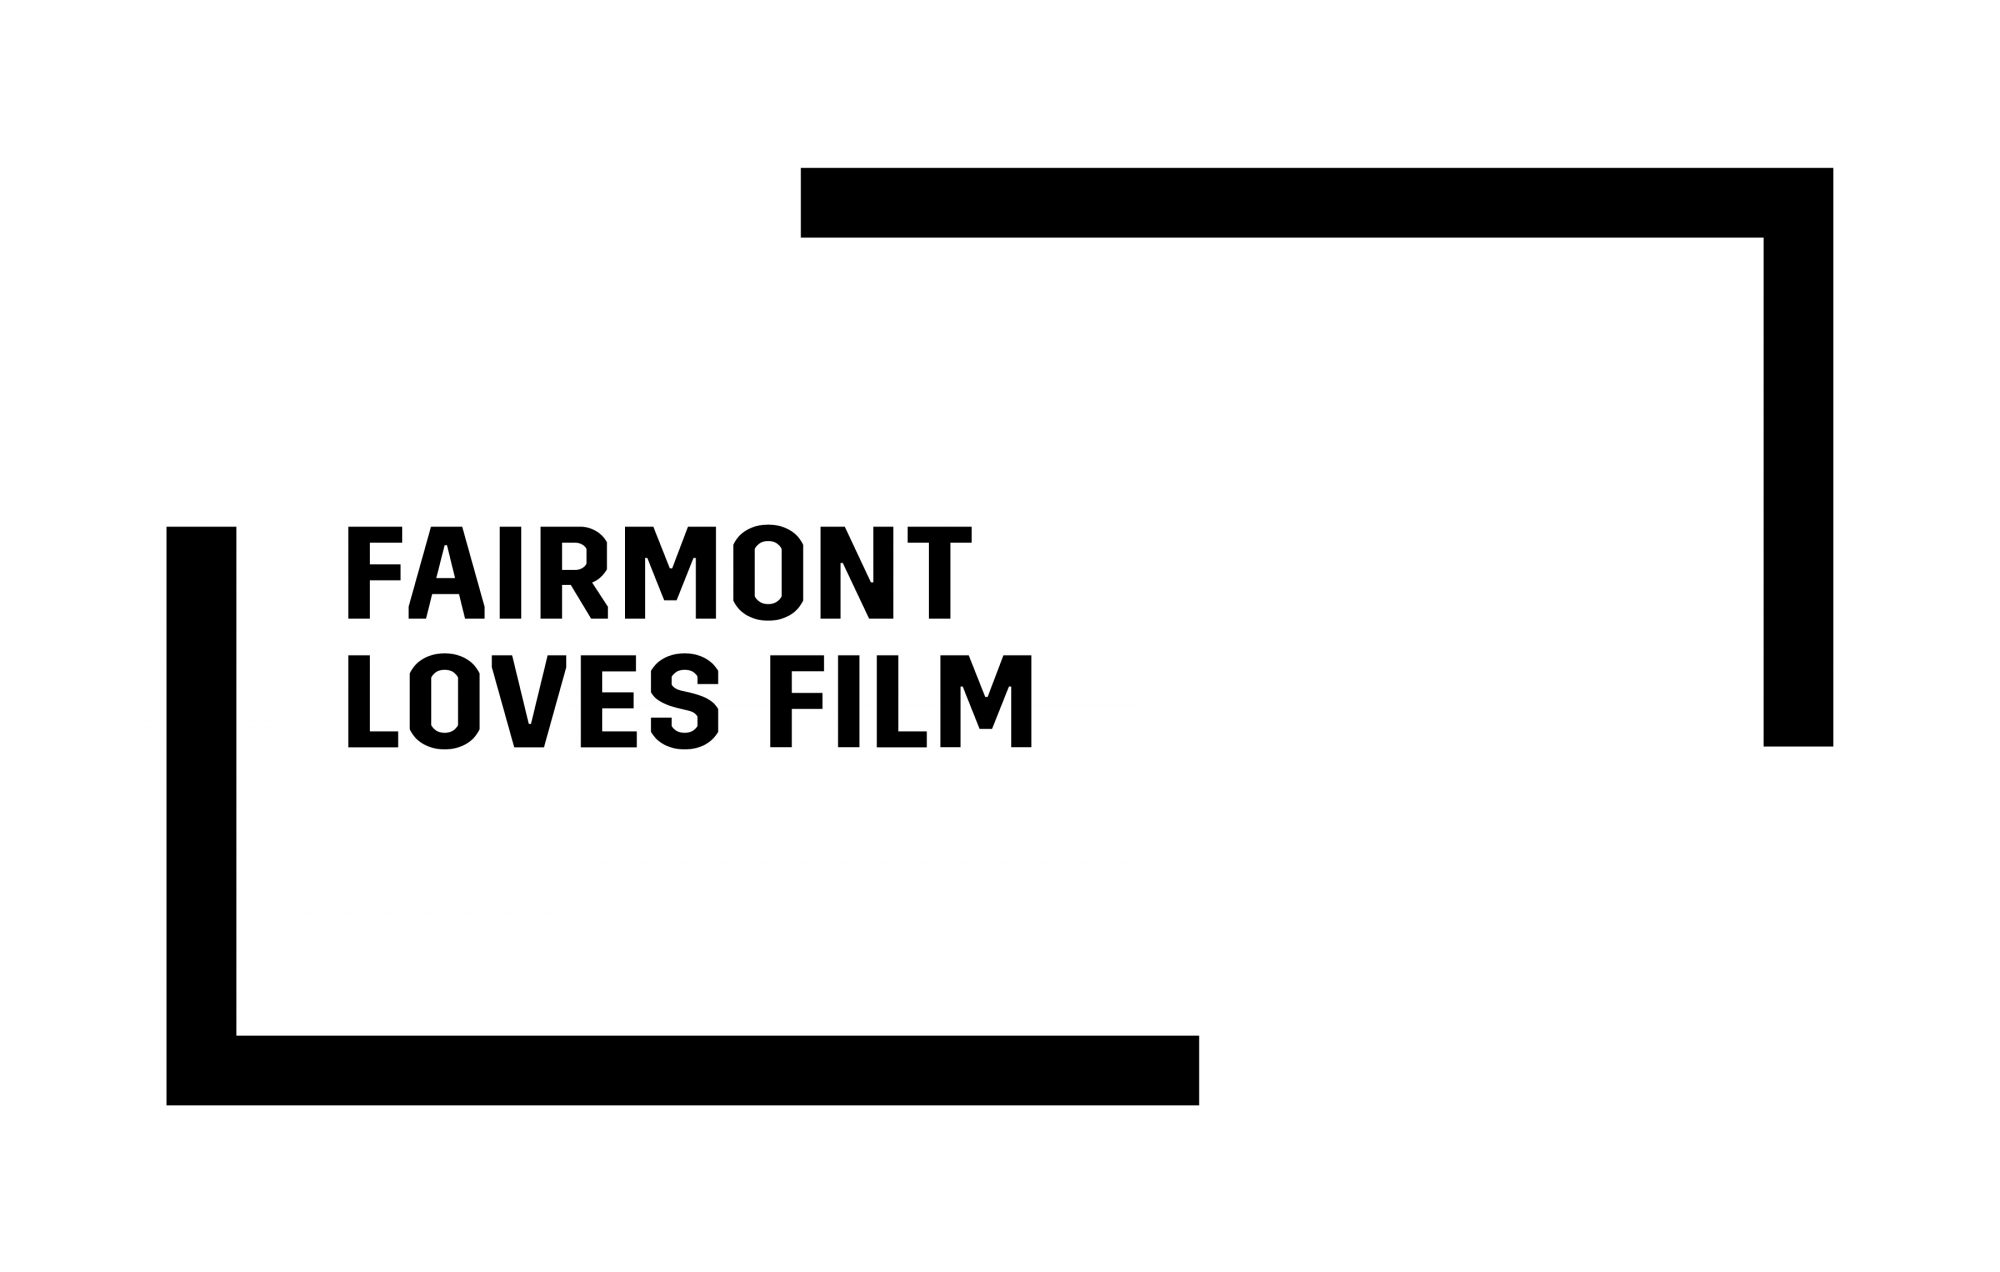 Fairmont Loves Film LOGO - BLACK